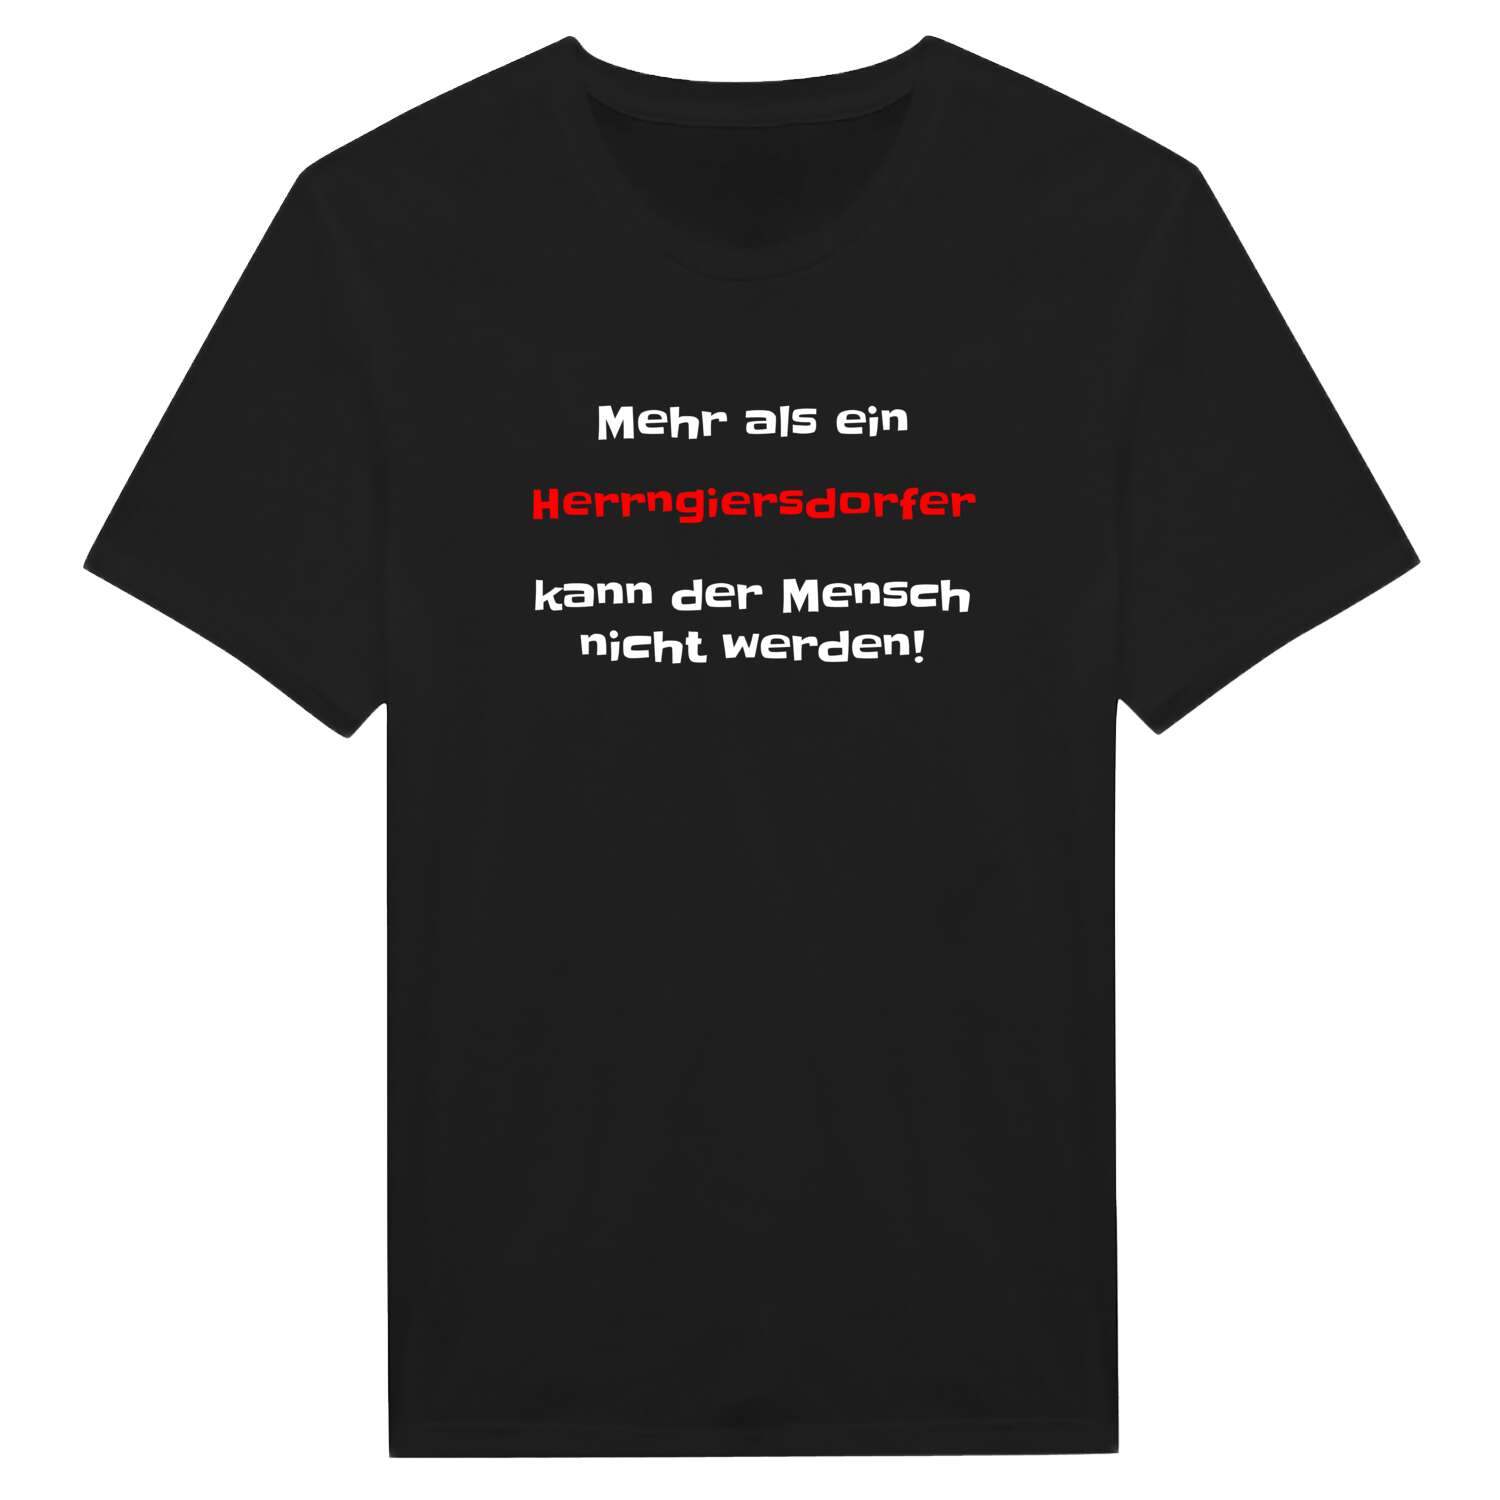 Herrngiersdorf T-Shirt »Mehr als ein«